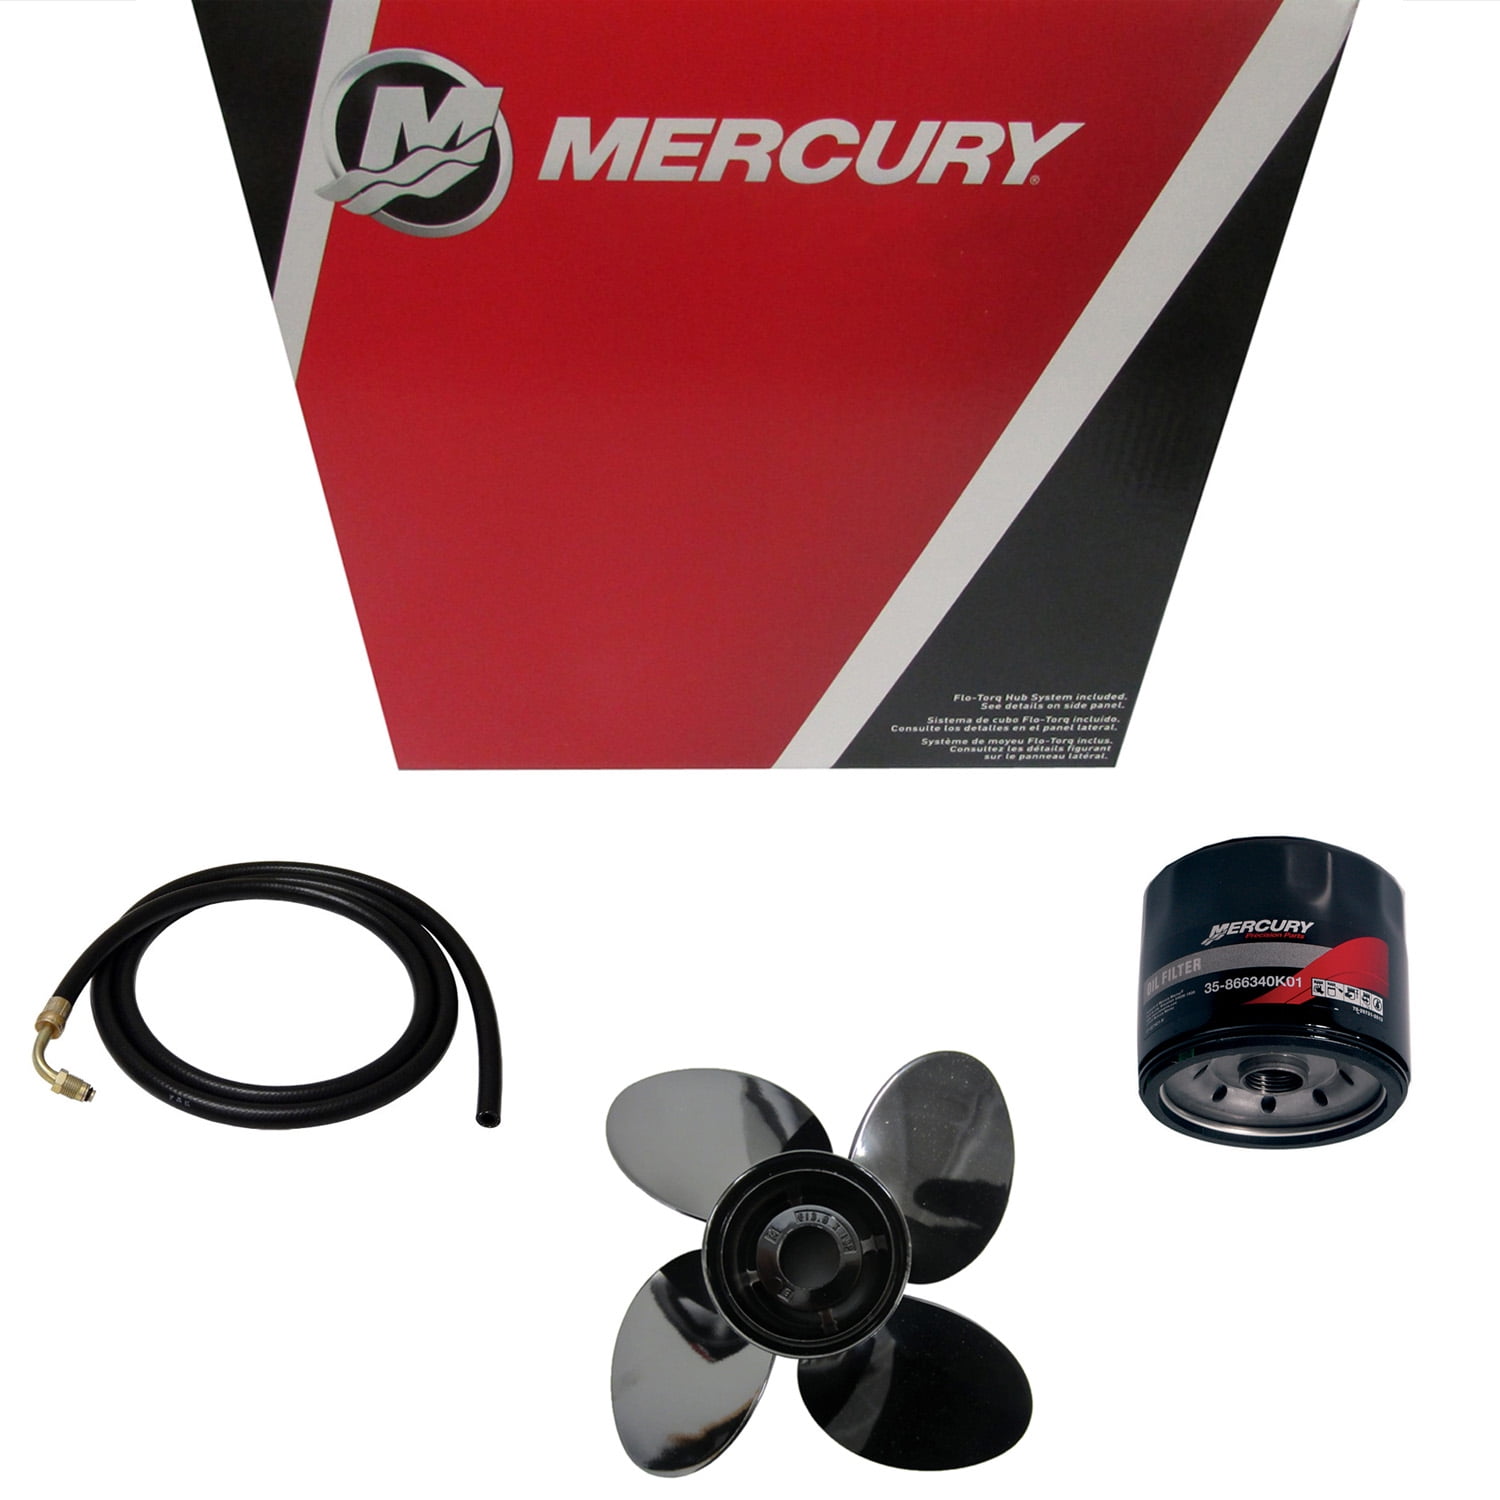 Mercury Mariner Outboard Engine Fuel Gauge Quicksilver 79-895291A01